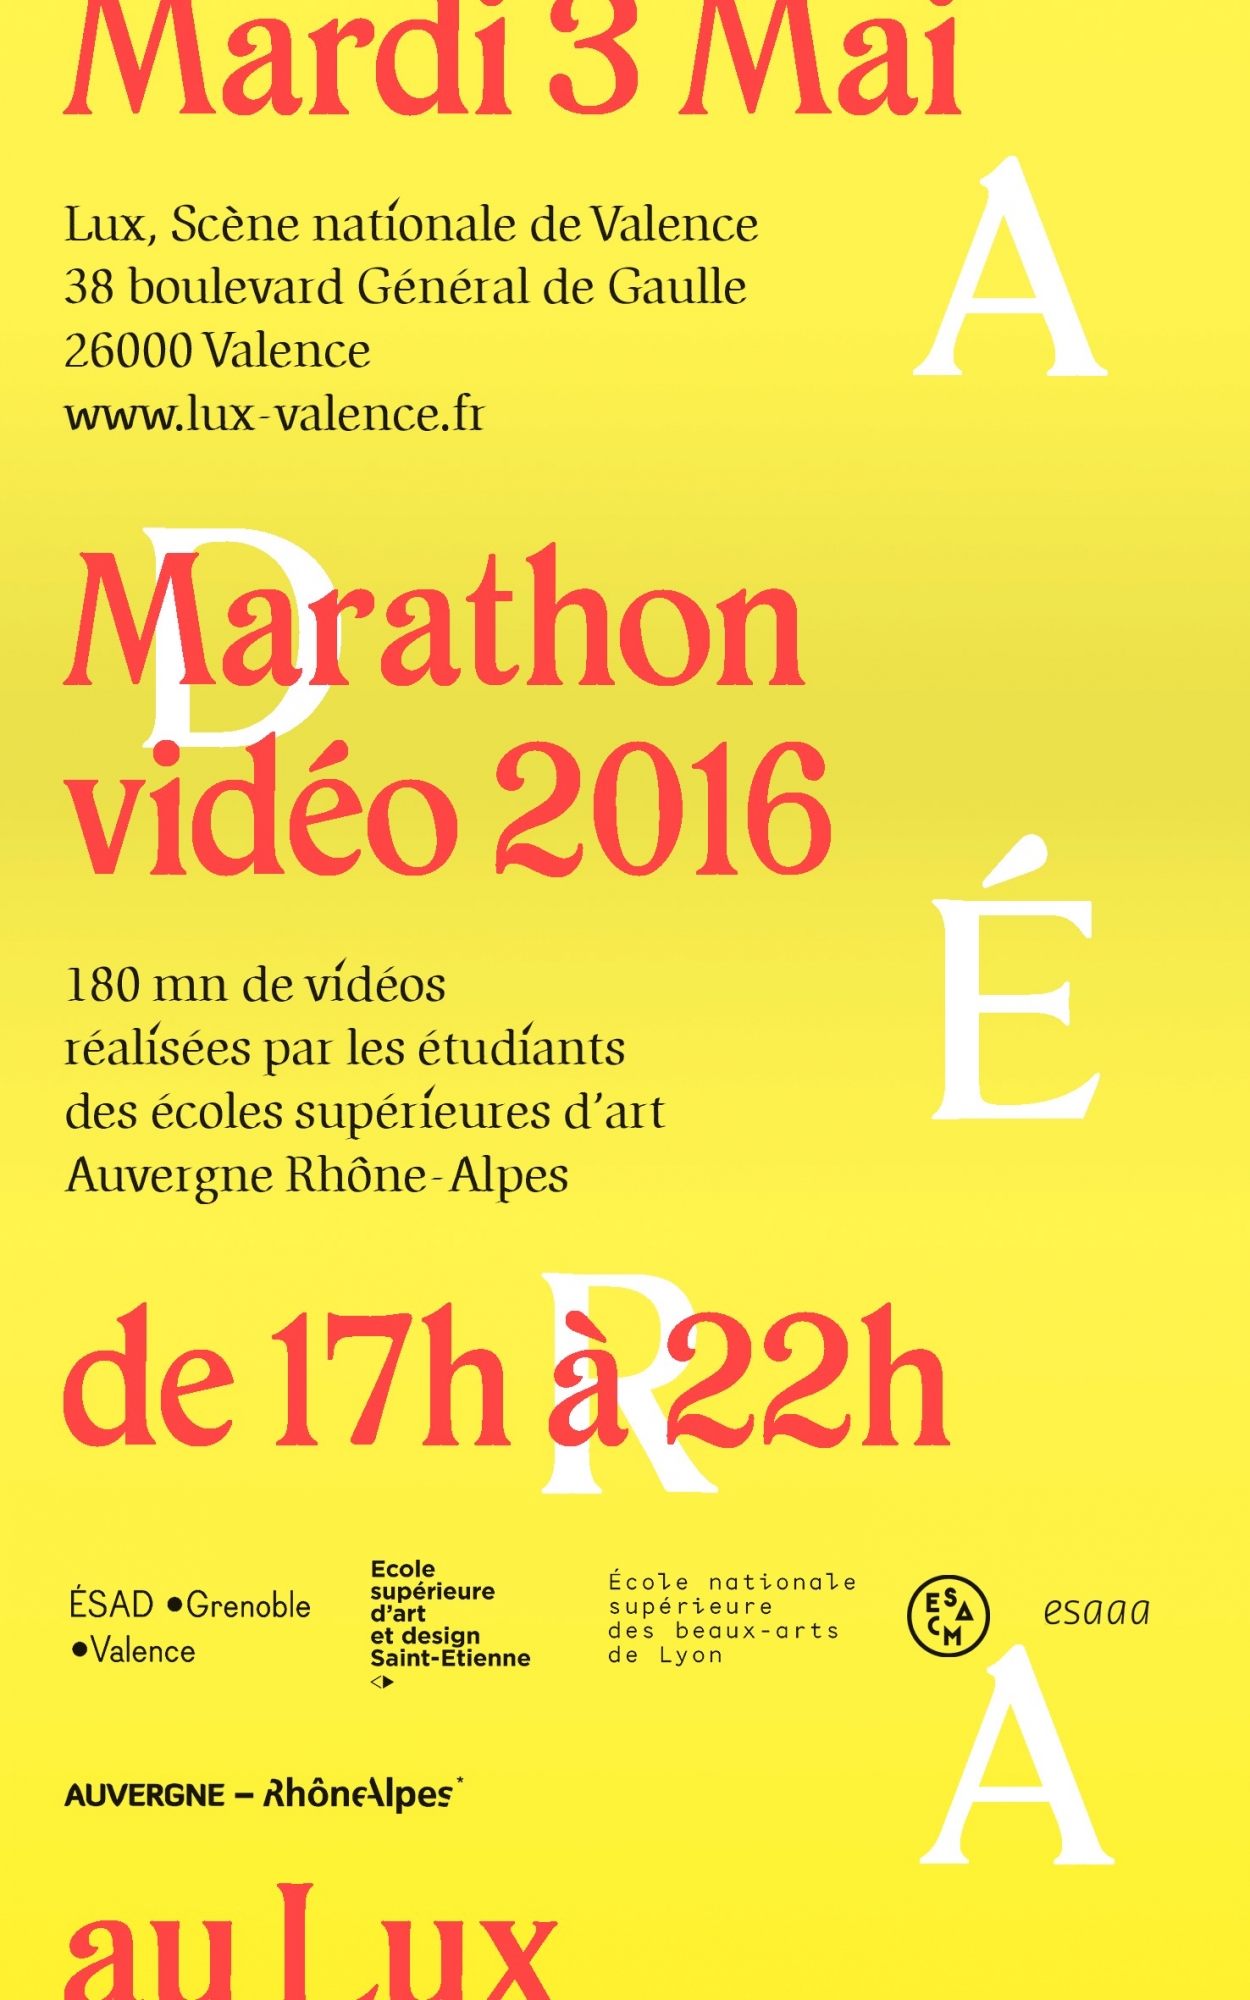 Affiche pour le Marathon Vidéo 2016 